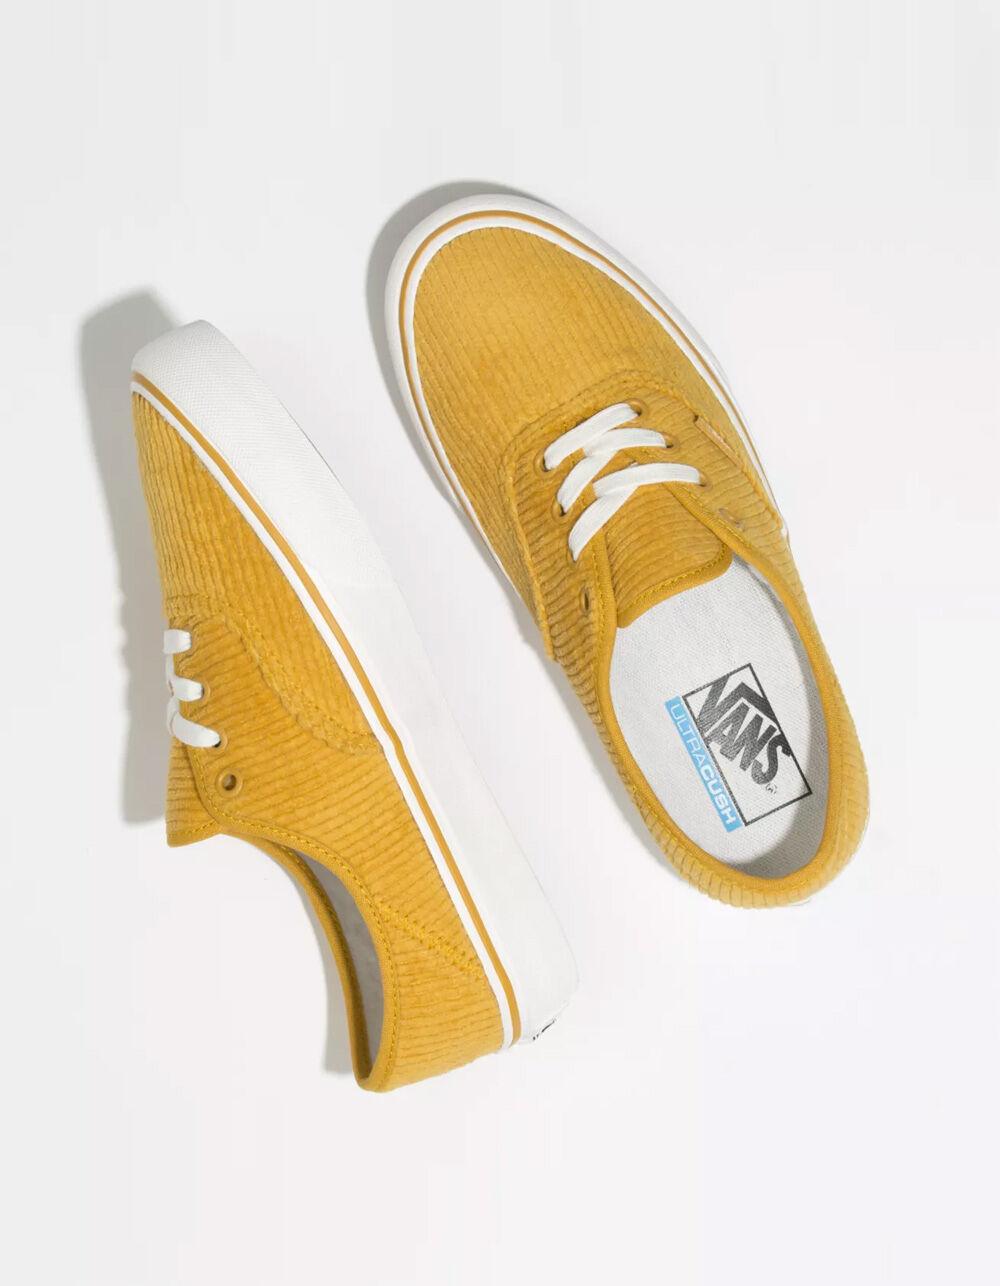 vans shoes mustard yellow